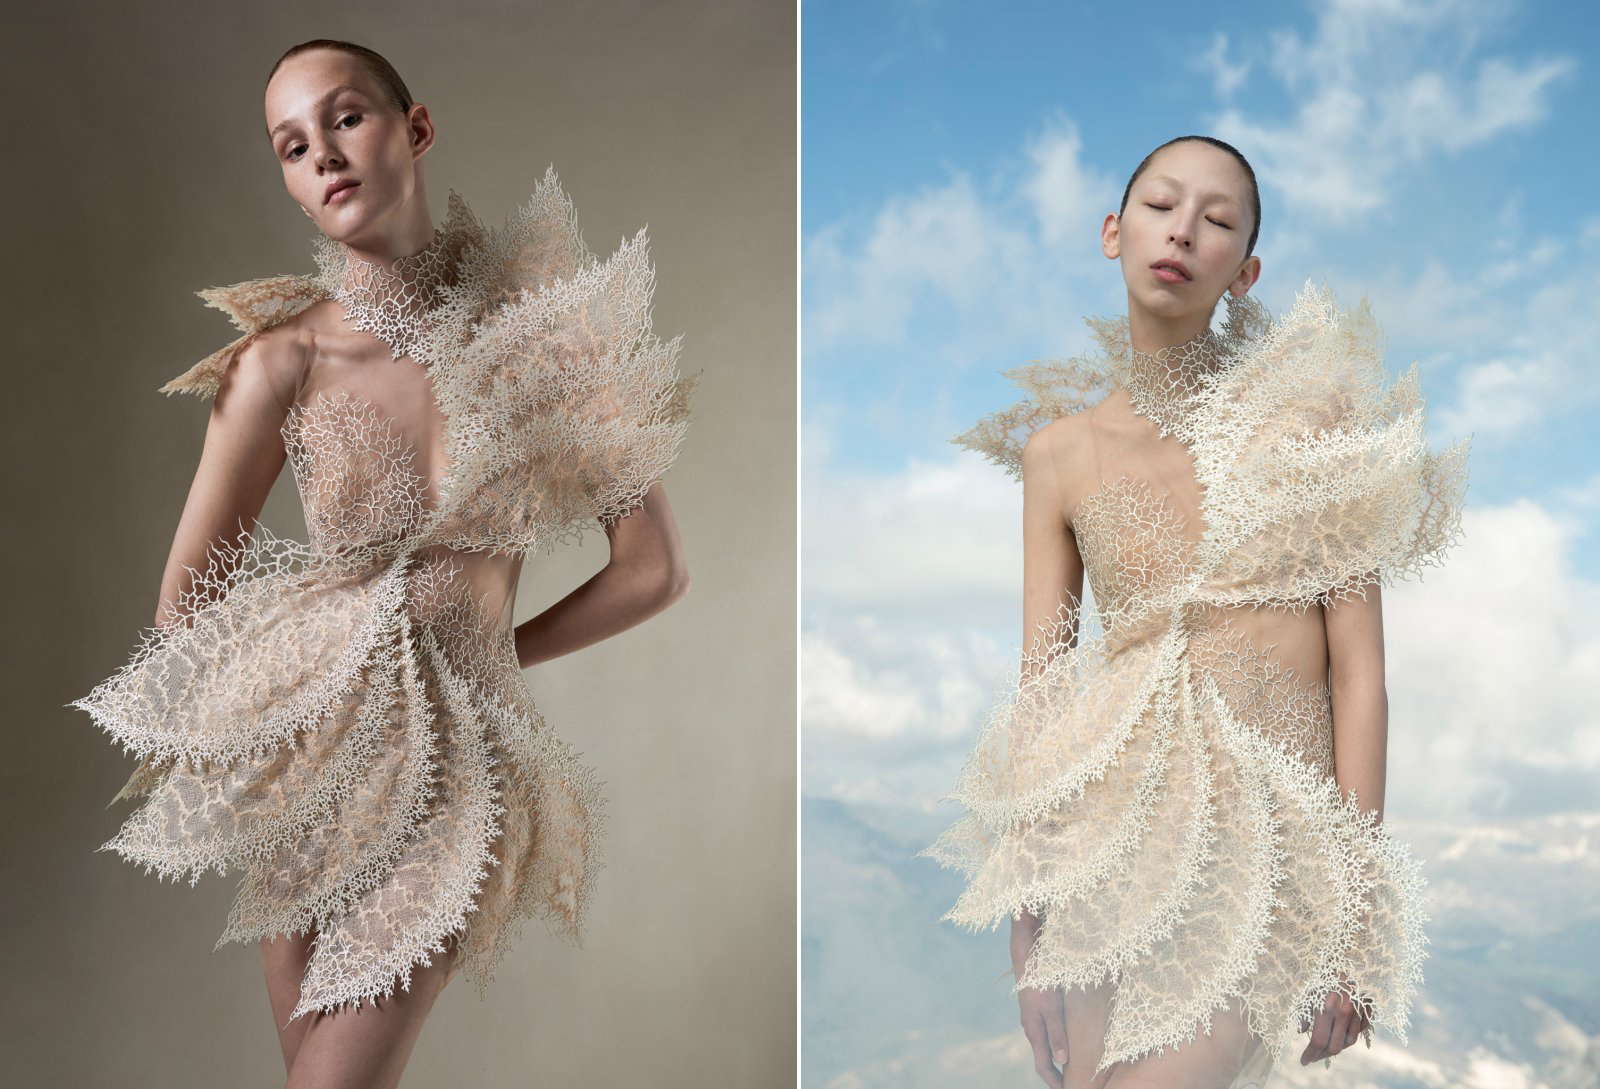 Iris van Herpen Recycles Plastic Waste into Sculptural Garments Sustainable Haute Couture